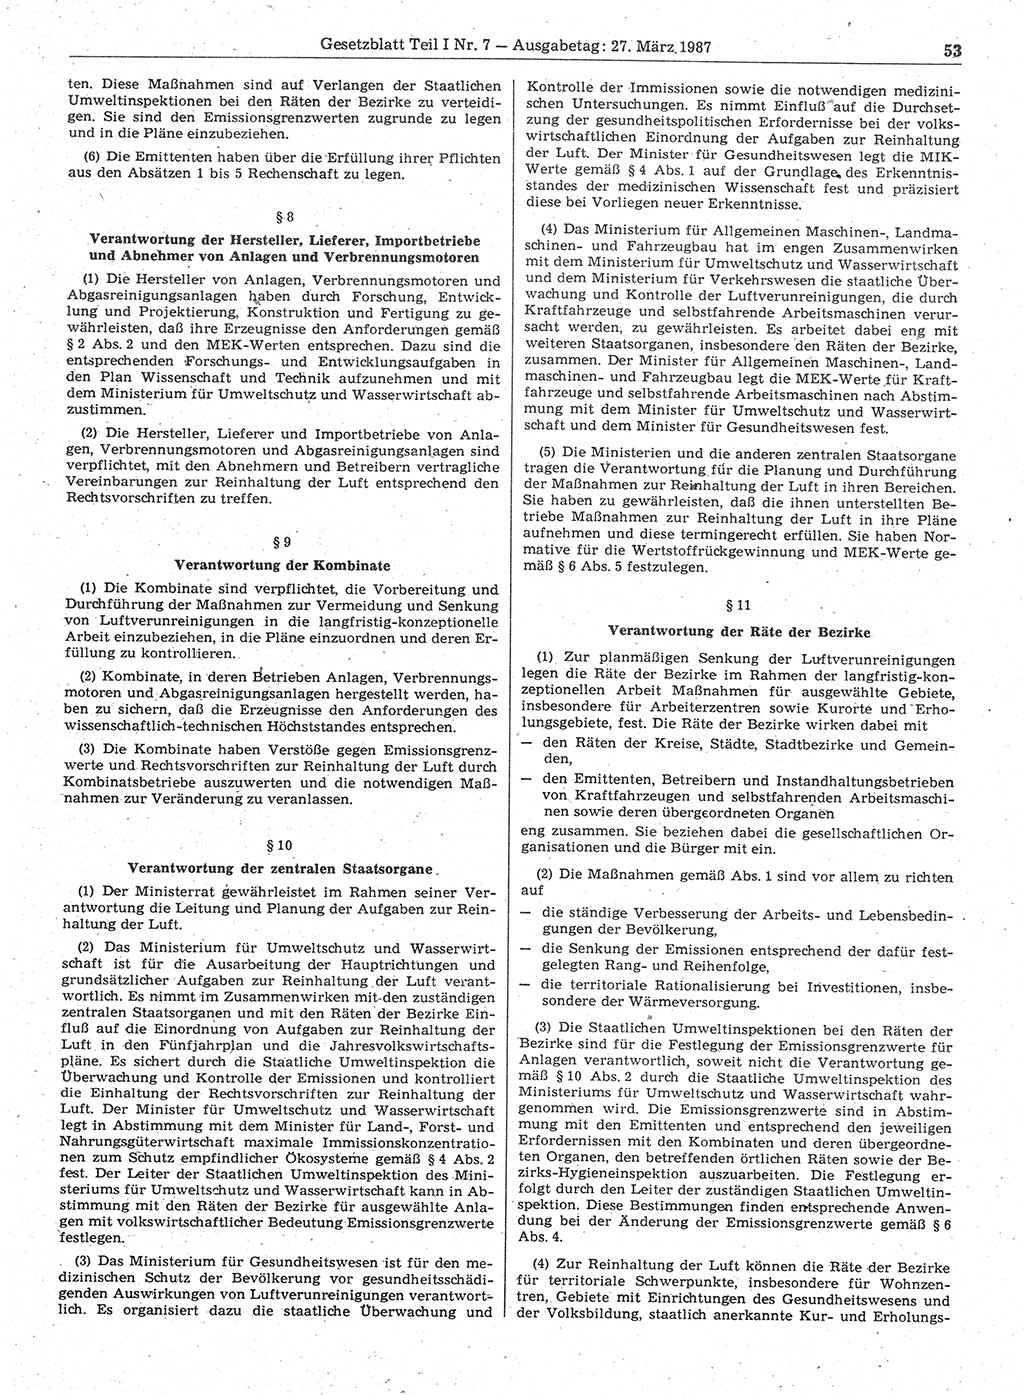 Gesetzblatt (GBl.) der Deutschen Demokratischen Republik (DDR) Teil Ⅰ 1987, Seite 53 (GBl. DDR Ⅰ 1987, S. 53)